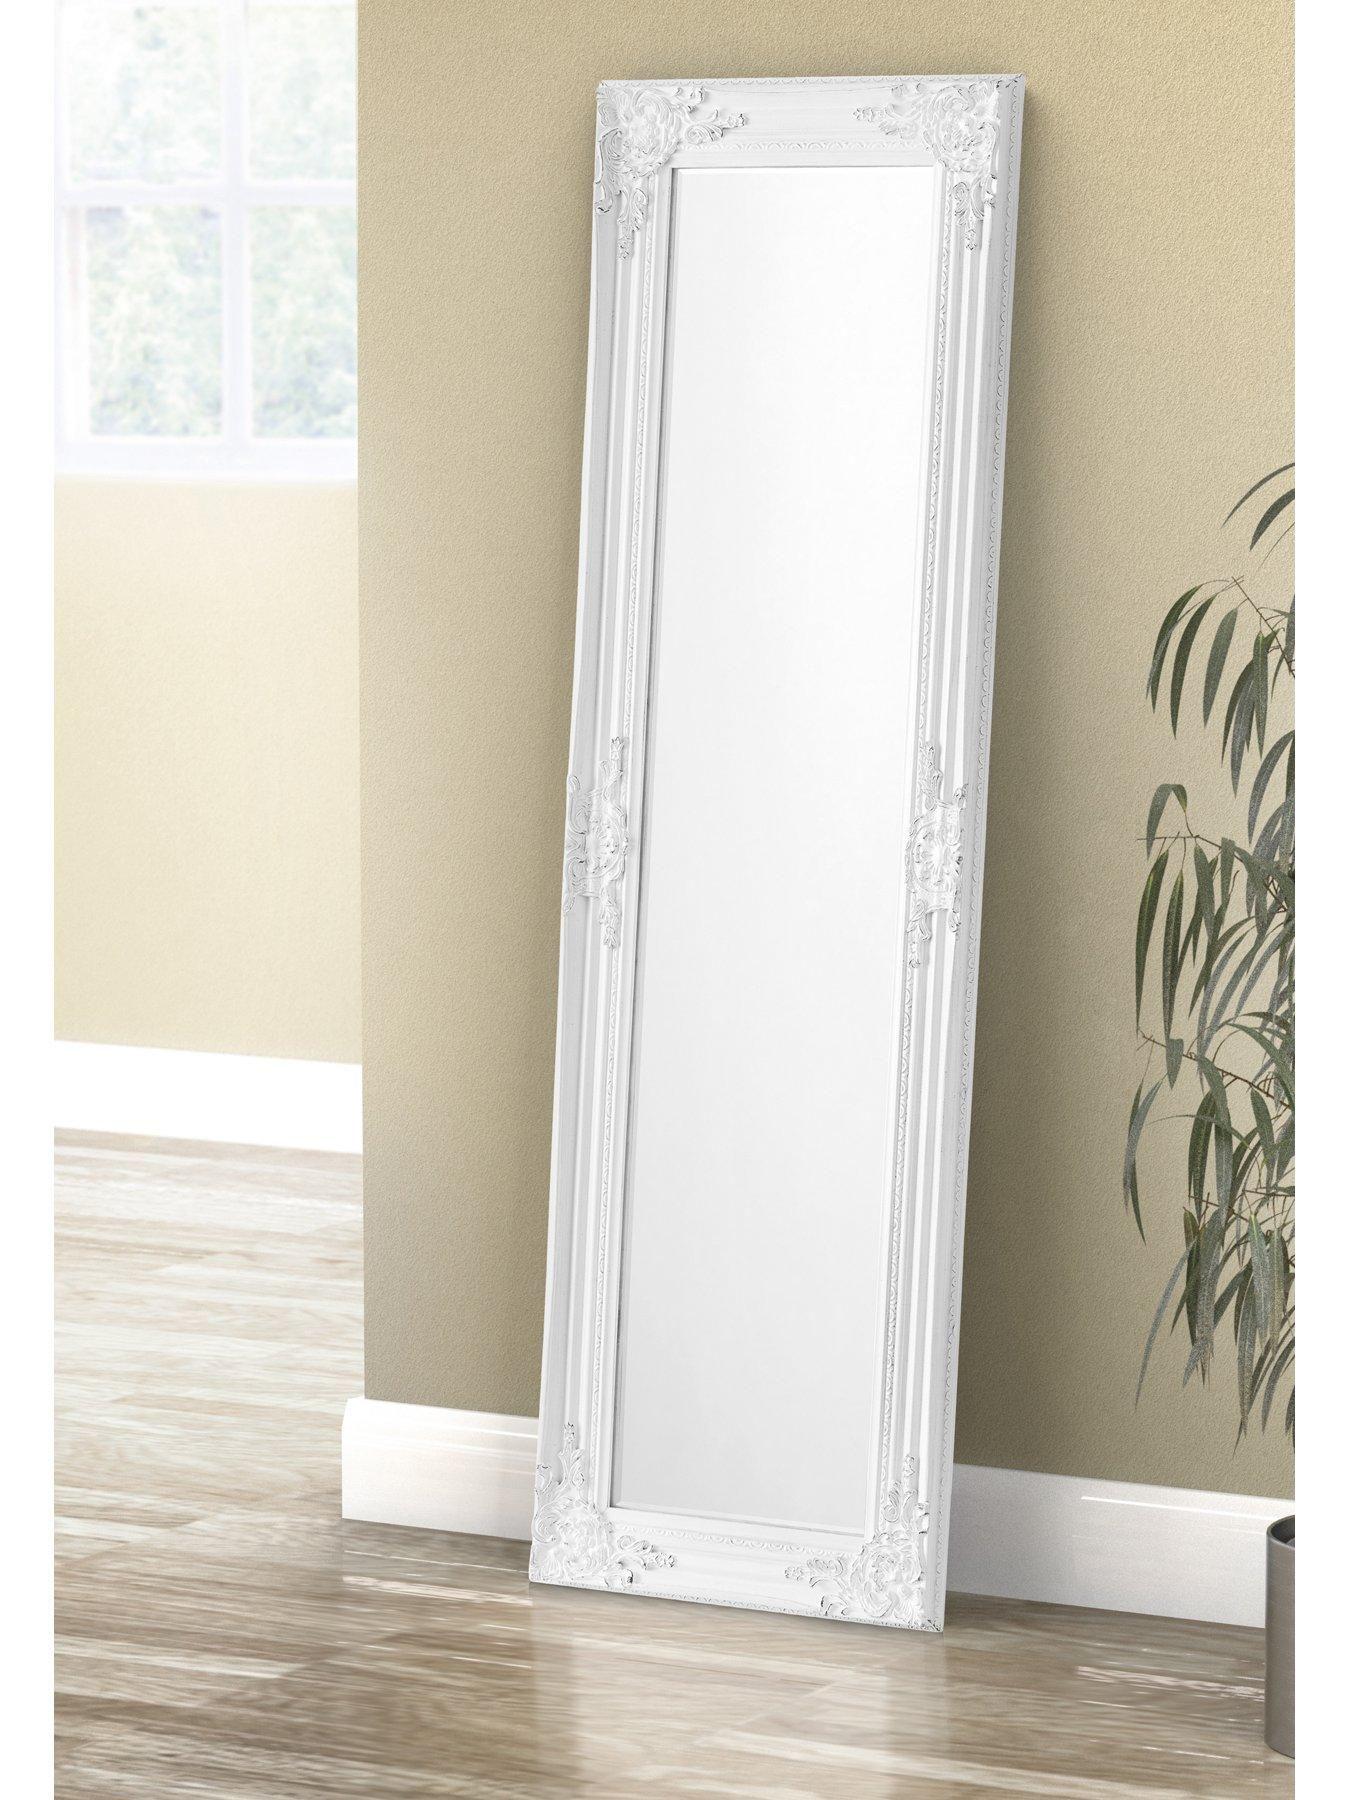 آینه قدی دیواری و ایستاده با قاب سفید چوبی|ایده ها